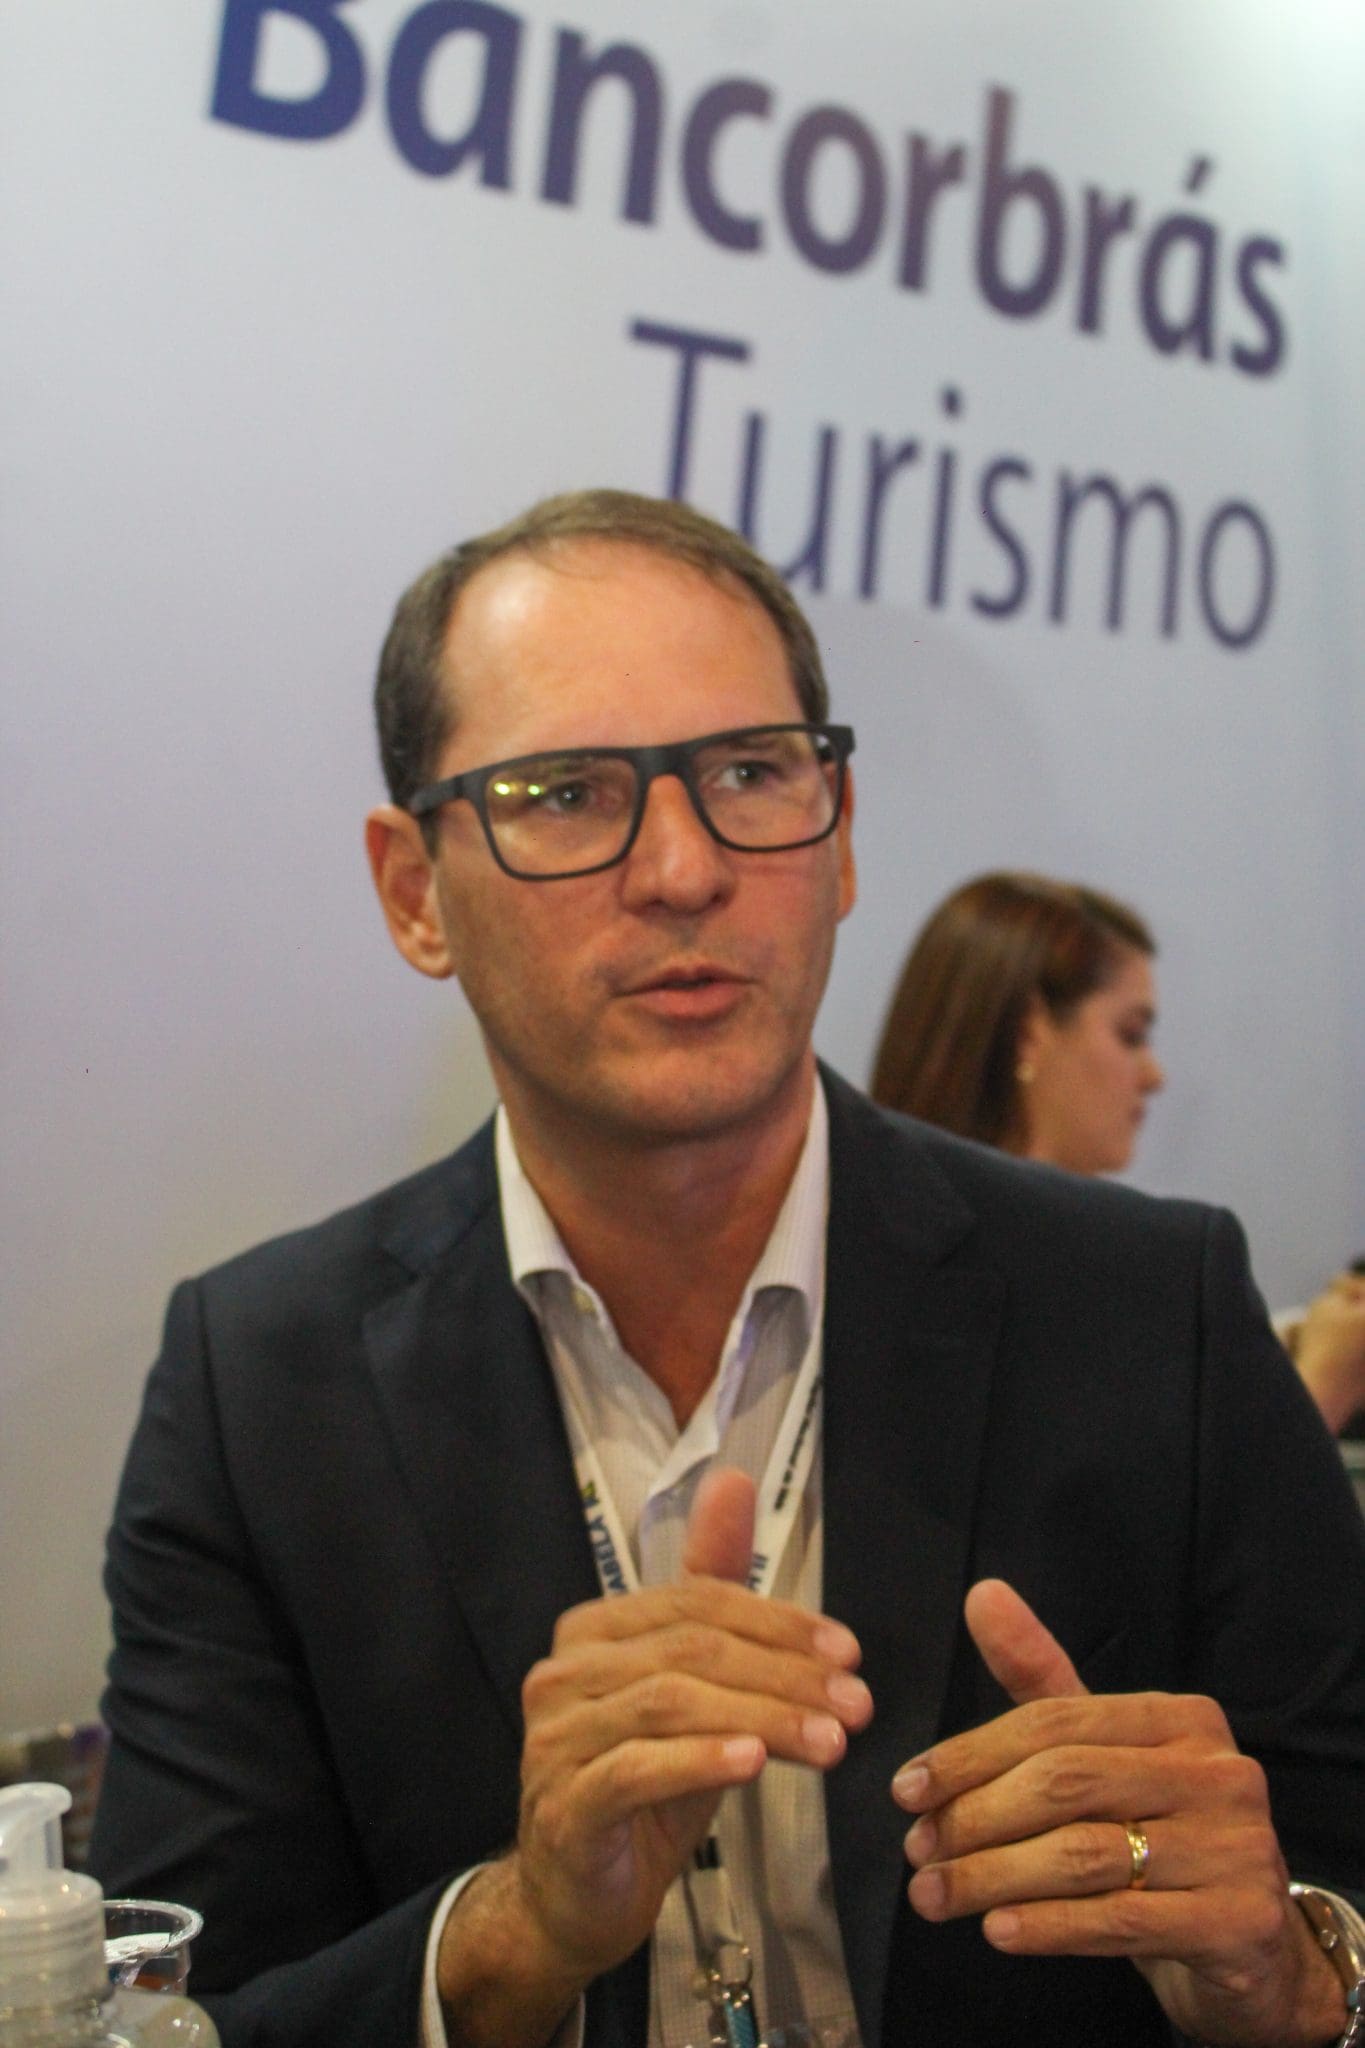 Claudio Roberto Nogueira, Diretor-Geral de Negócios e Marketing da Bancorbrás